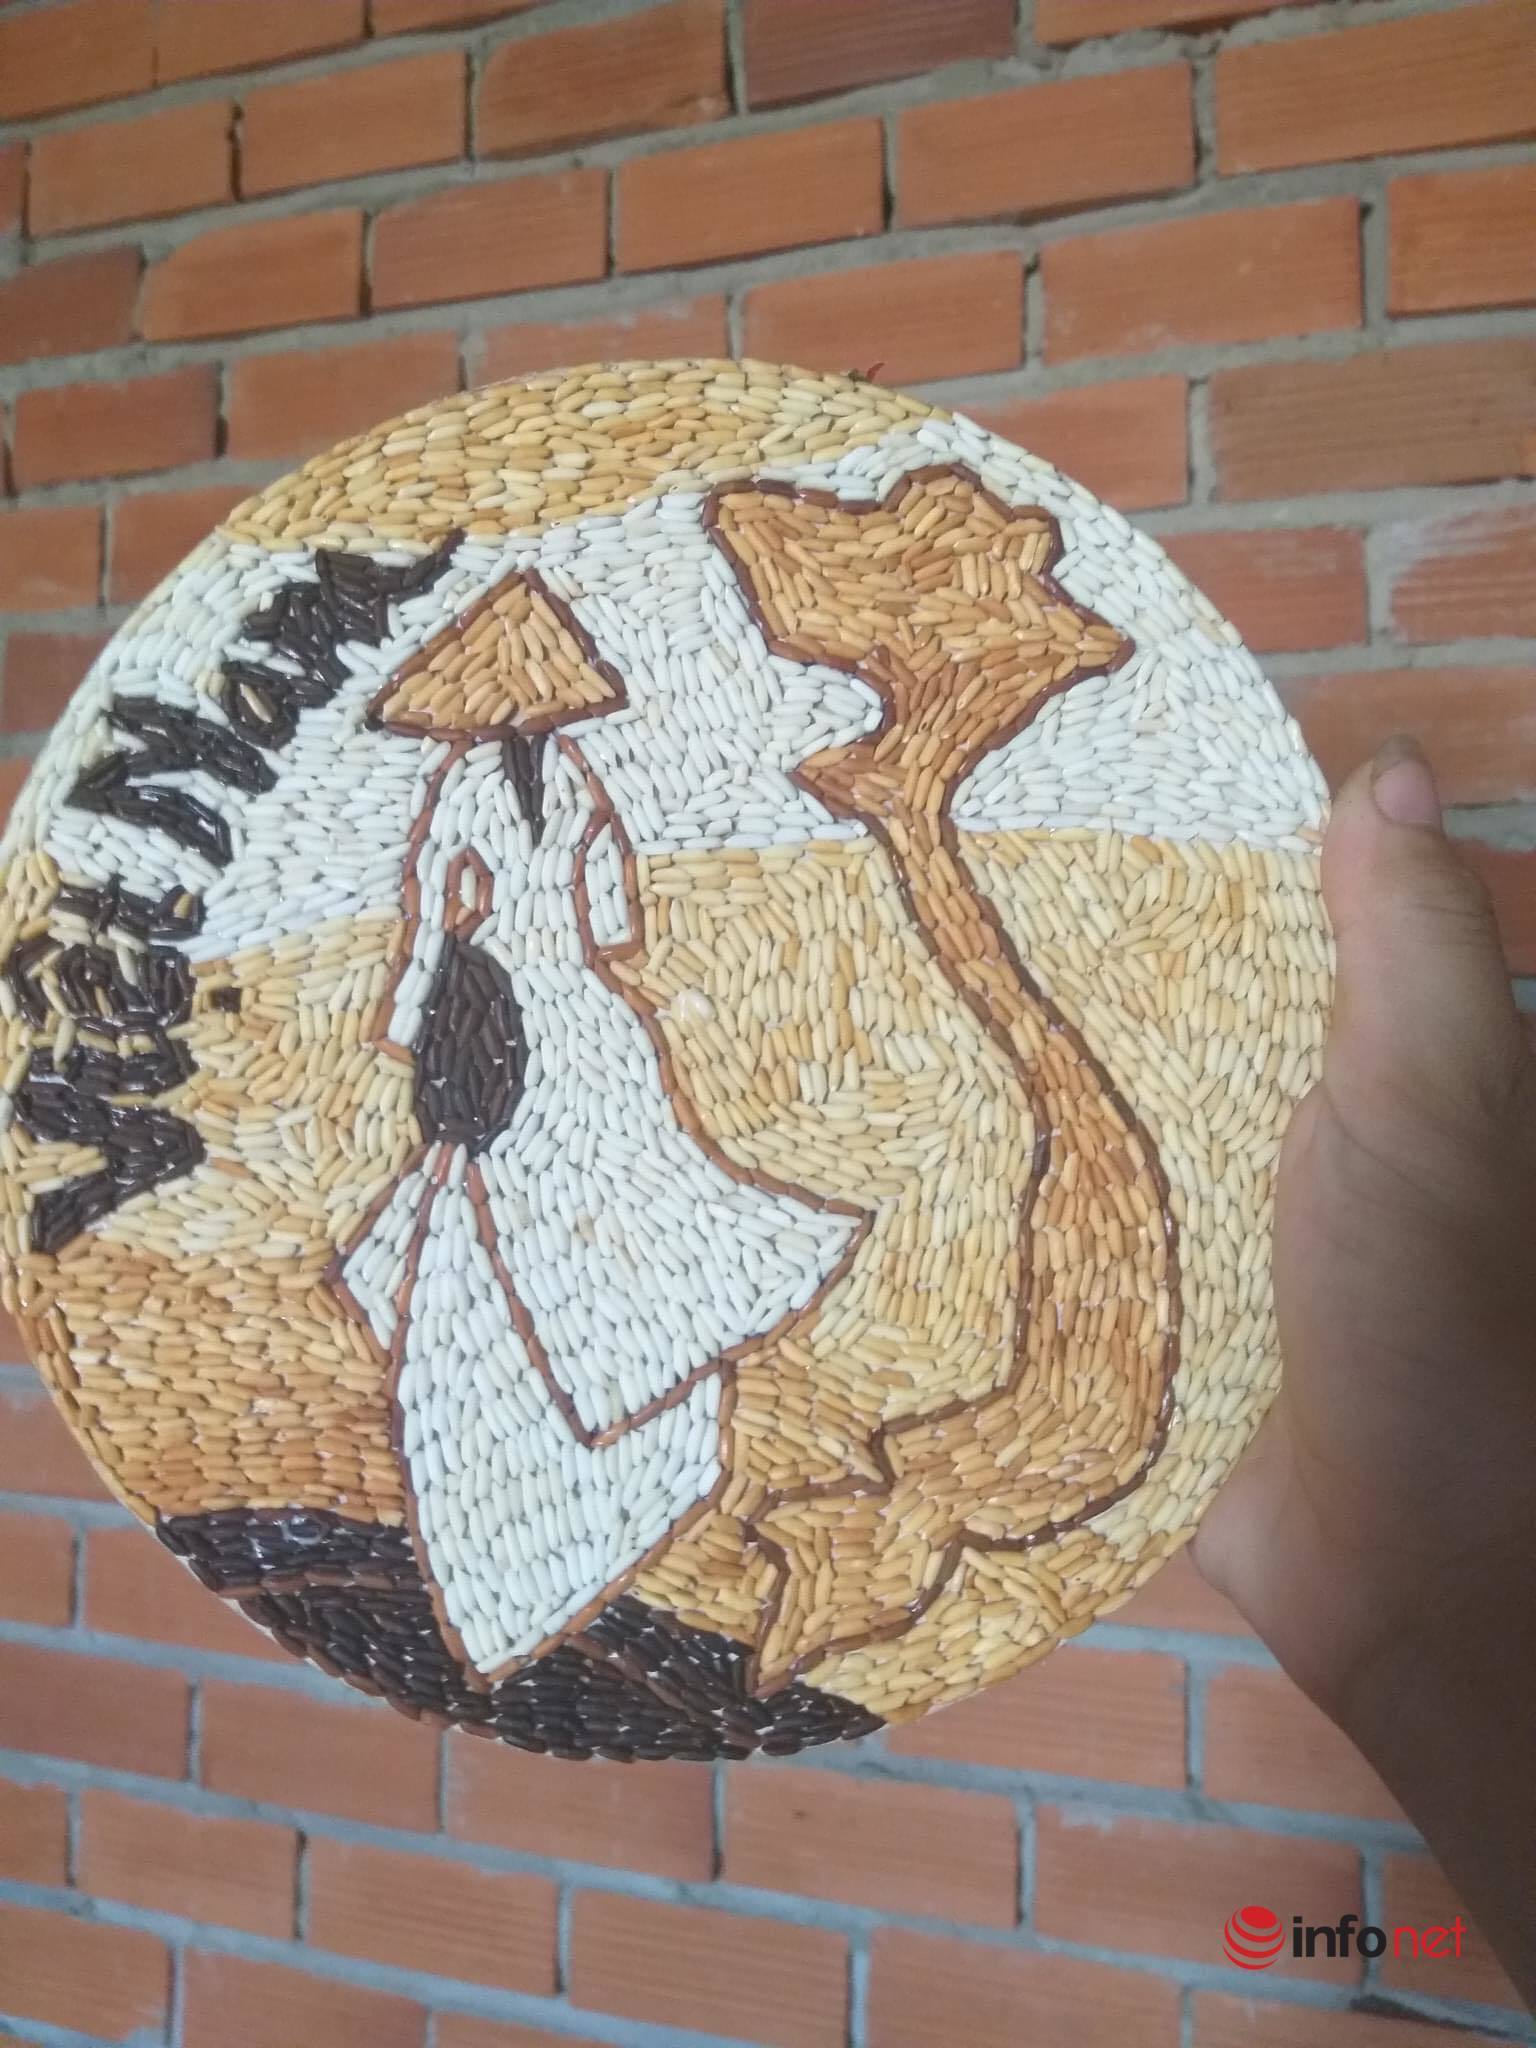 Kiệt tác tranh làm từ những hạt gạo